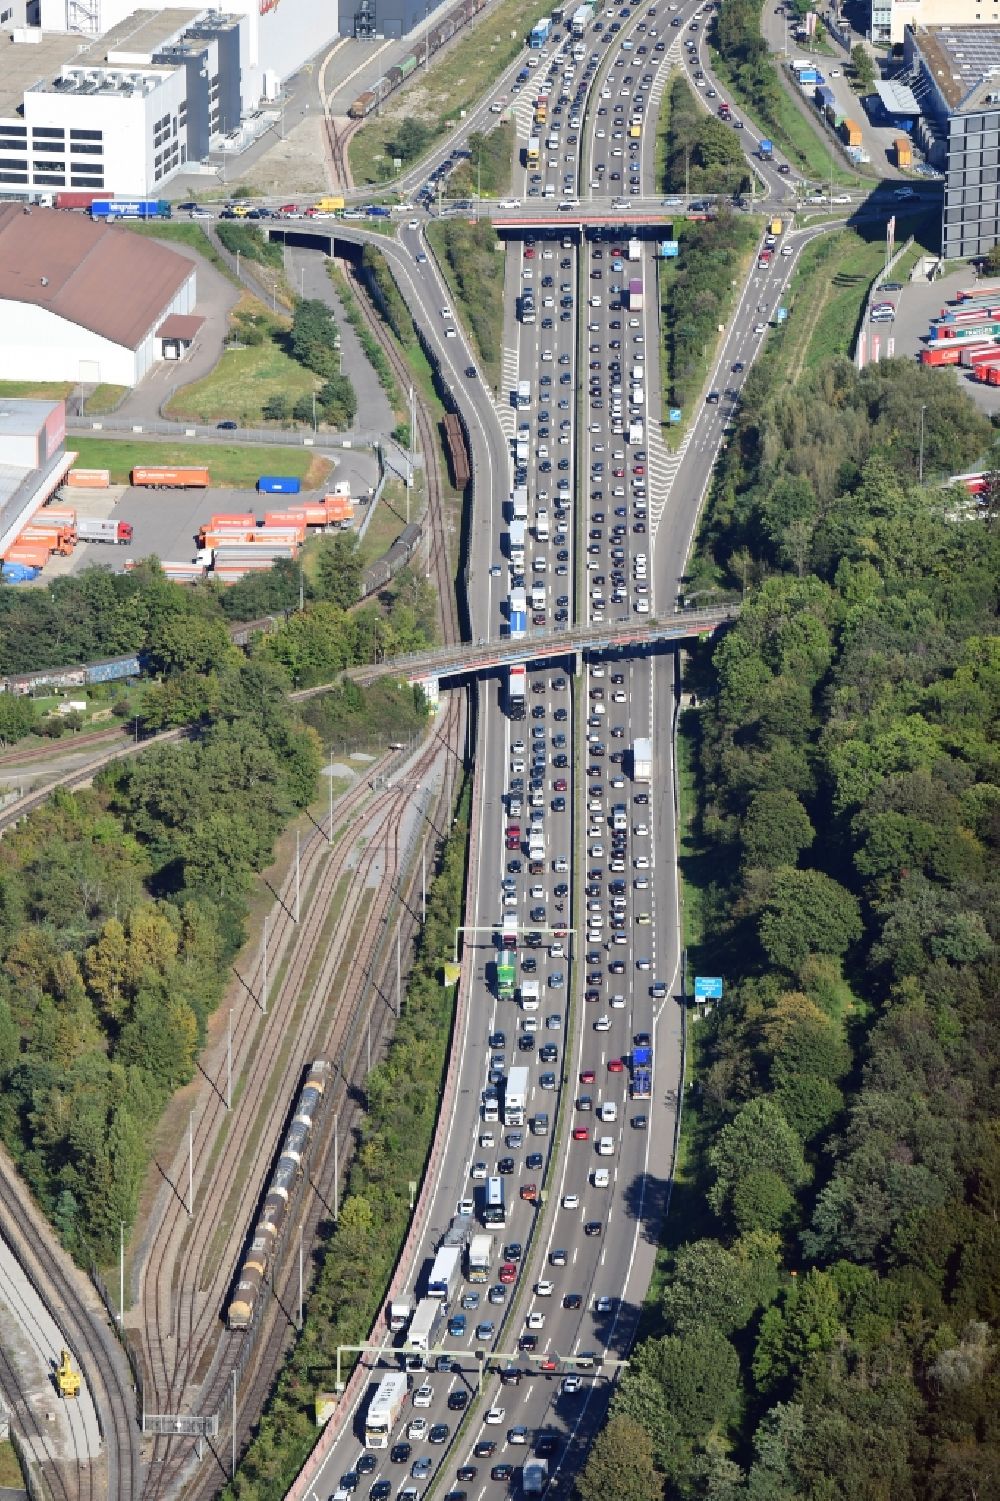 Luftbild Pratteln - Autobahn- Stau im Streckenverlauf der schweizer Autobahn A2 / A3 in Pratteln im Kanton Basel-Landschaft, Schweiz